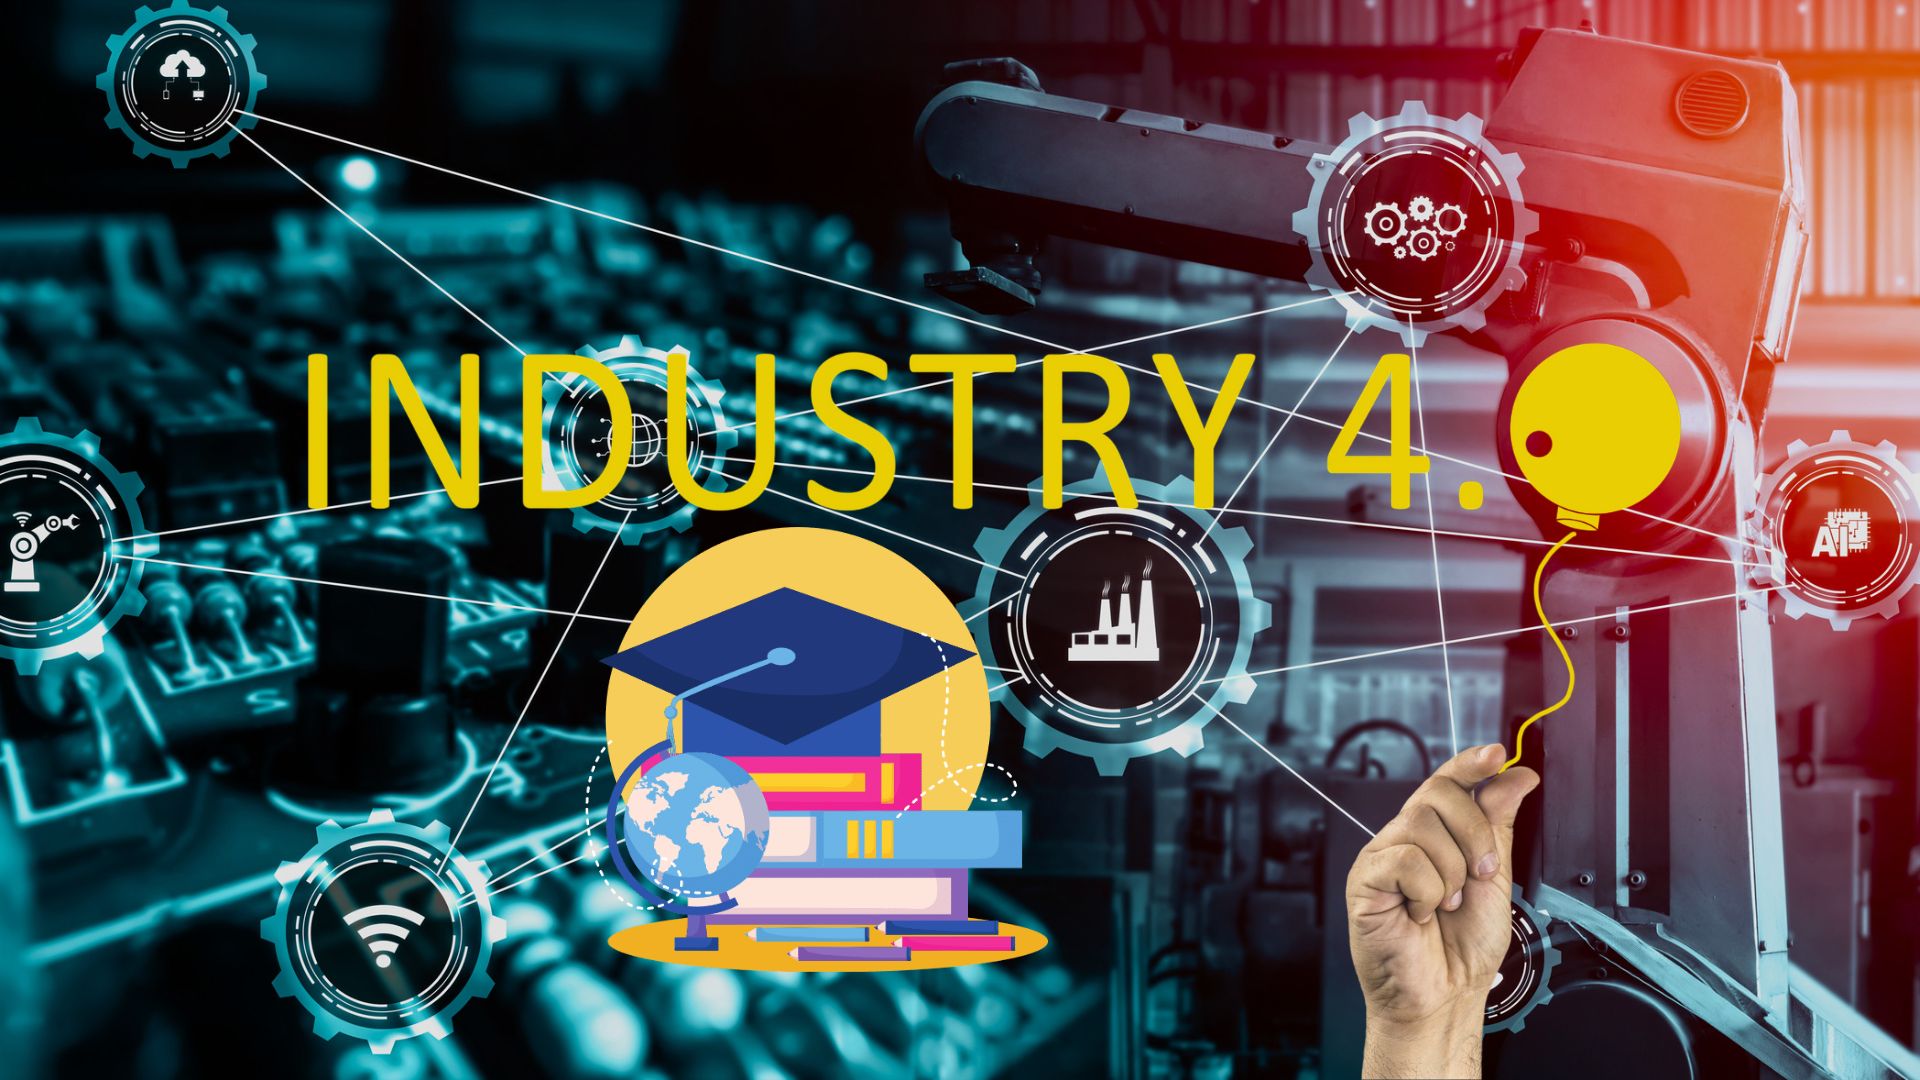 Cách mạng công nghiệp 4.0 tác động đến giáo dục như thế nào